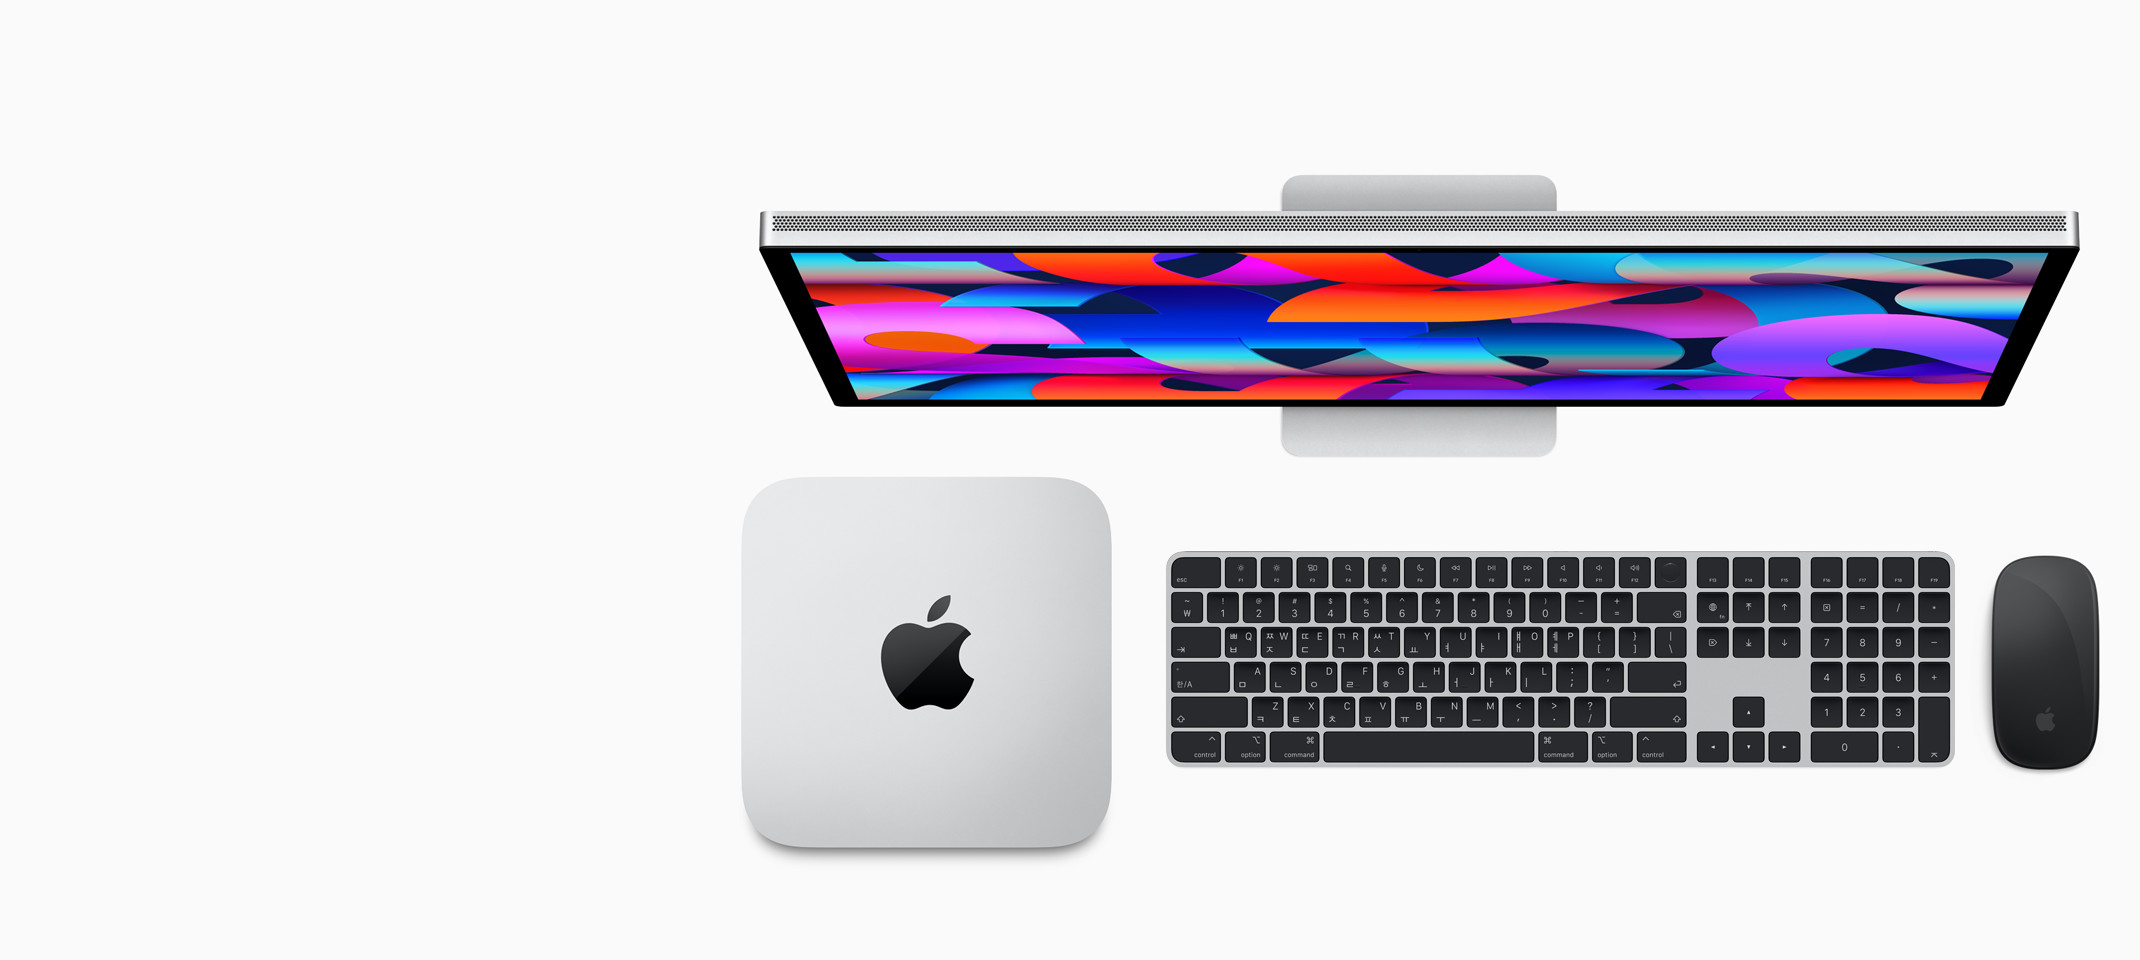 Studio Display, Mac Studio, Touch ID 및 숫자 키패드 탑재형 Magic Keyboard 및 Magic Mouse